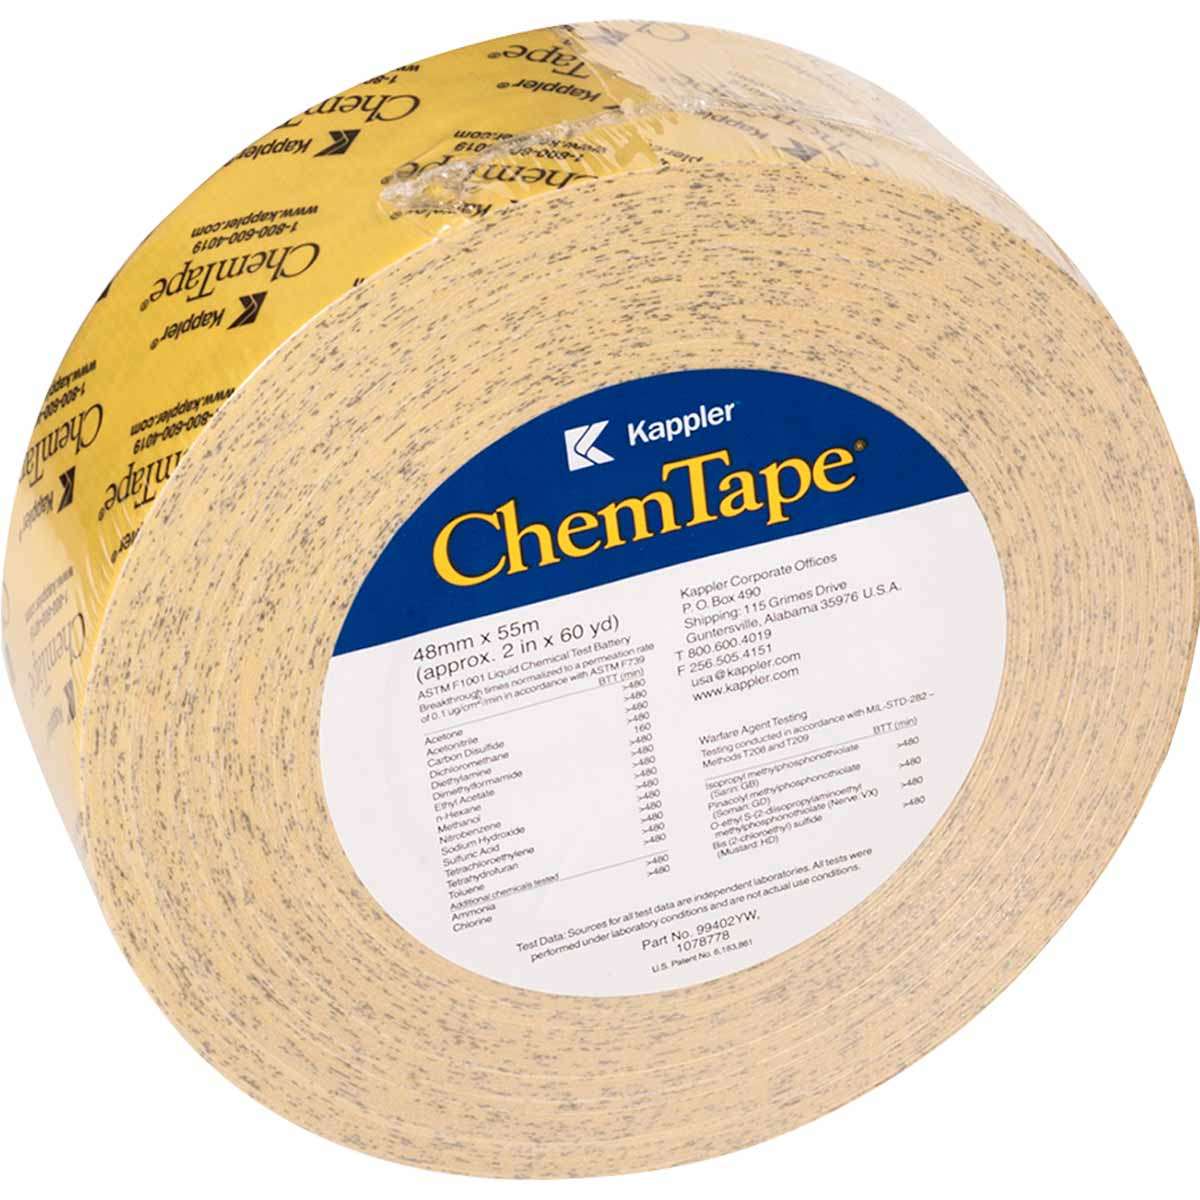 Kappler ChemTape Chemical Resistant Tape 55m x 48mm